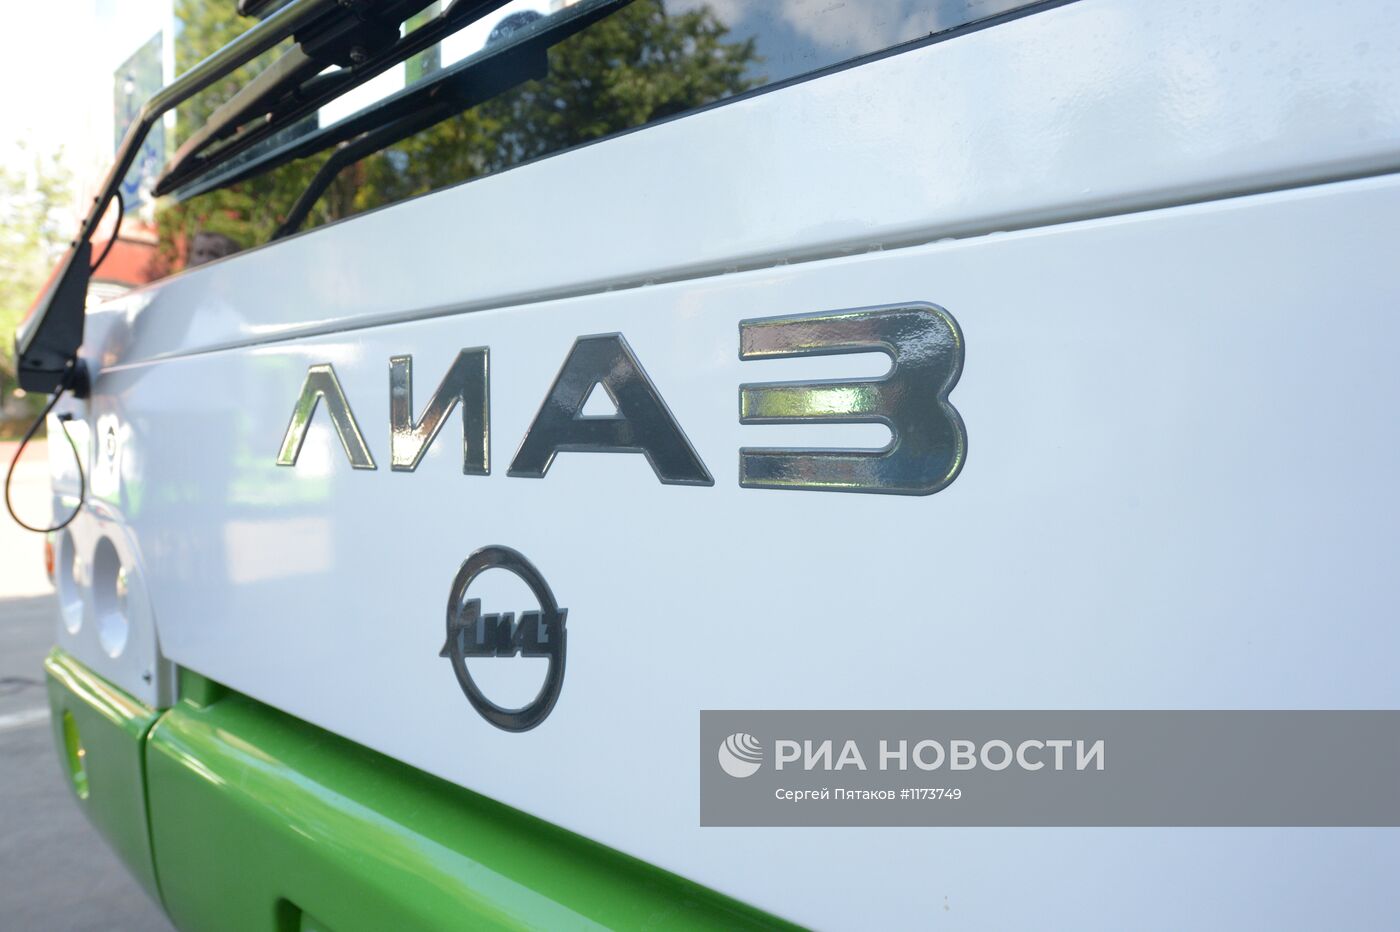 Передача новых автобусов завода ЛиАЗ ГУП "Мосгортранс"